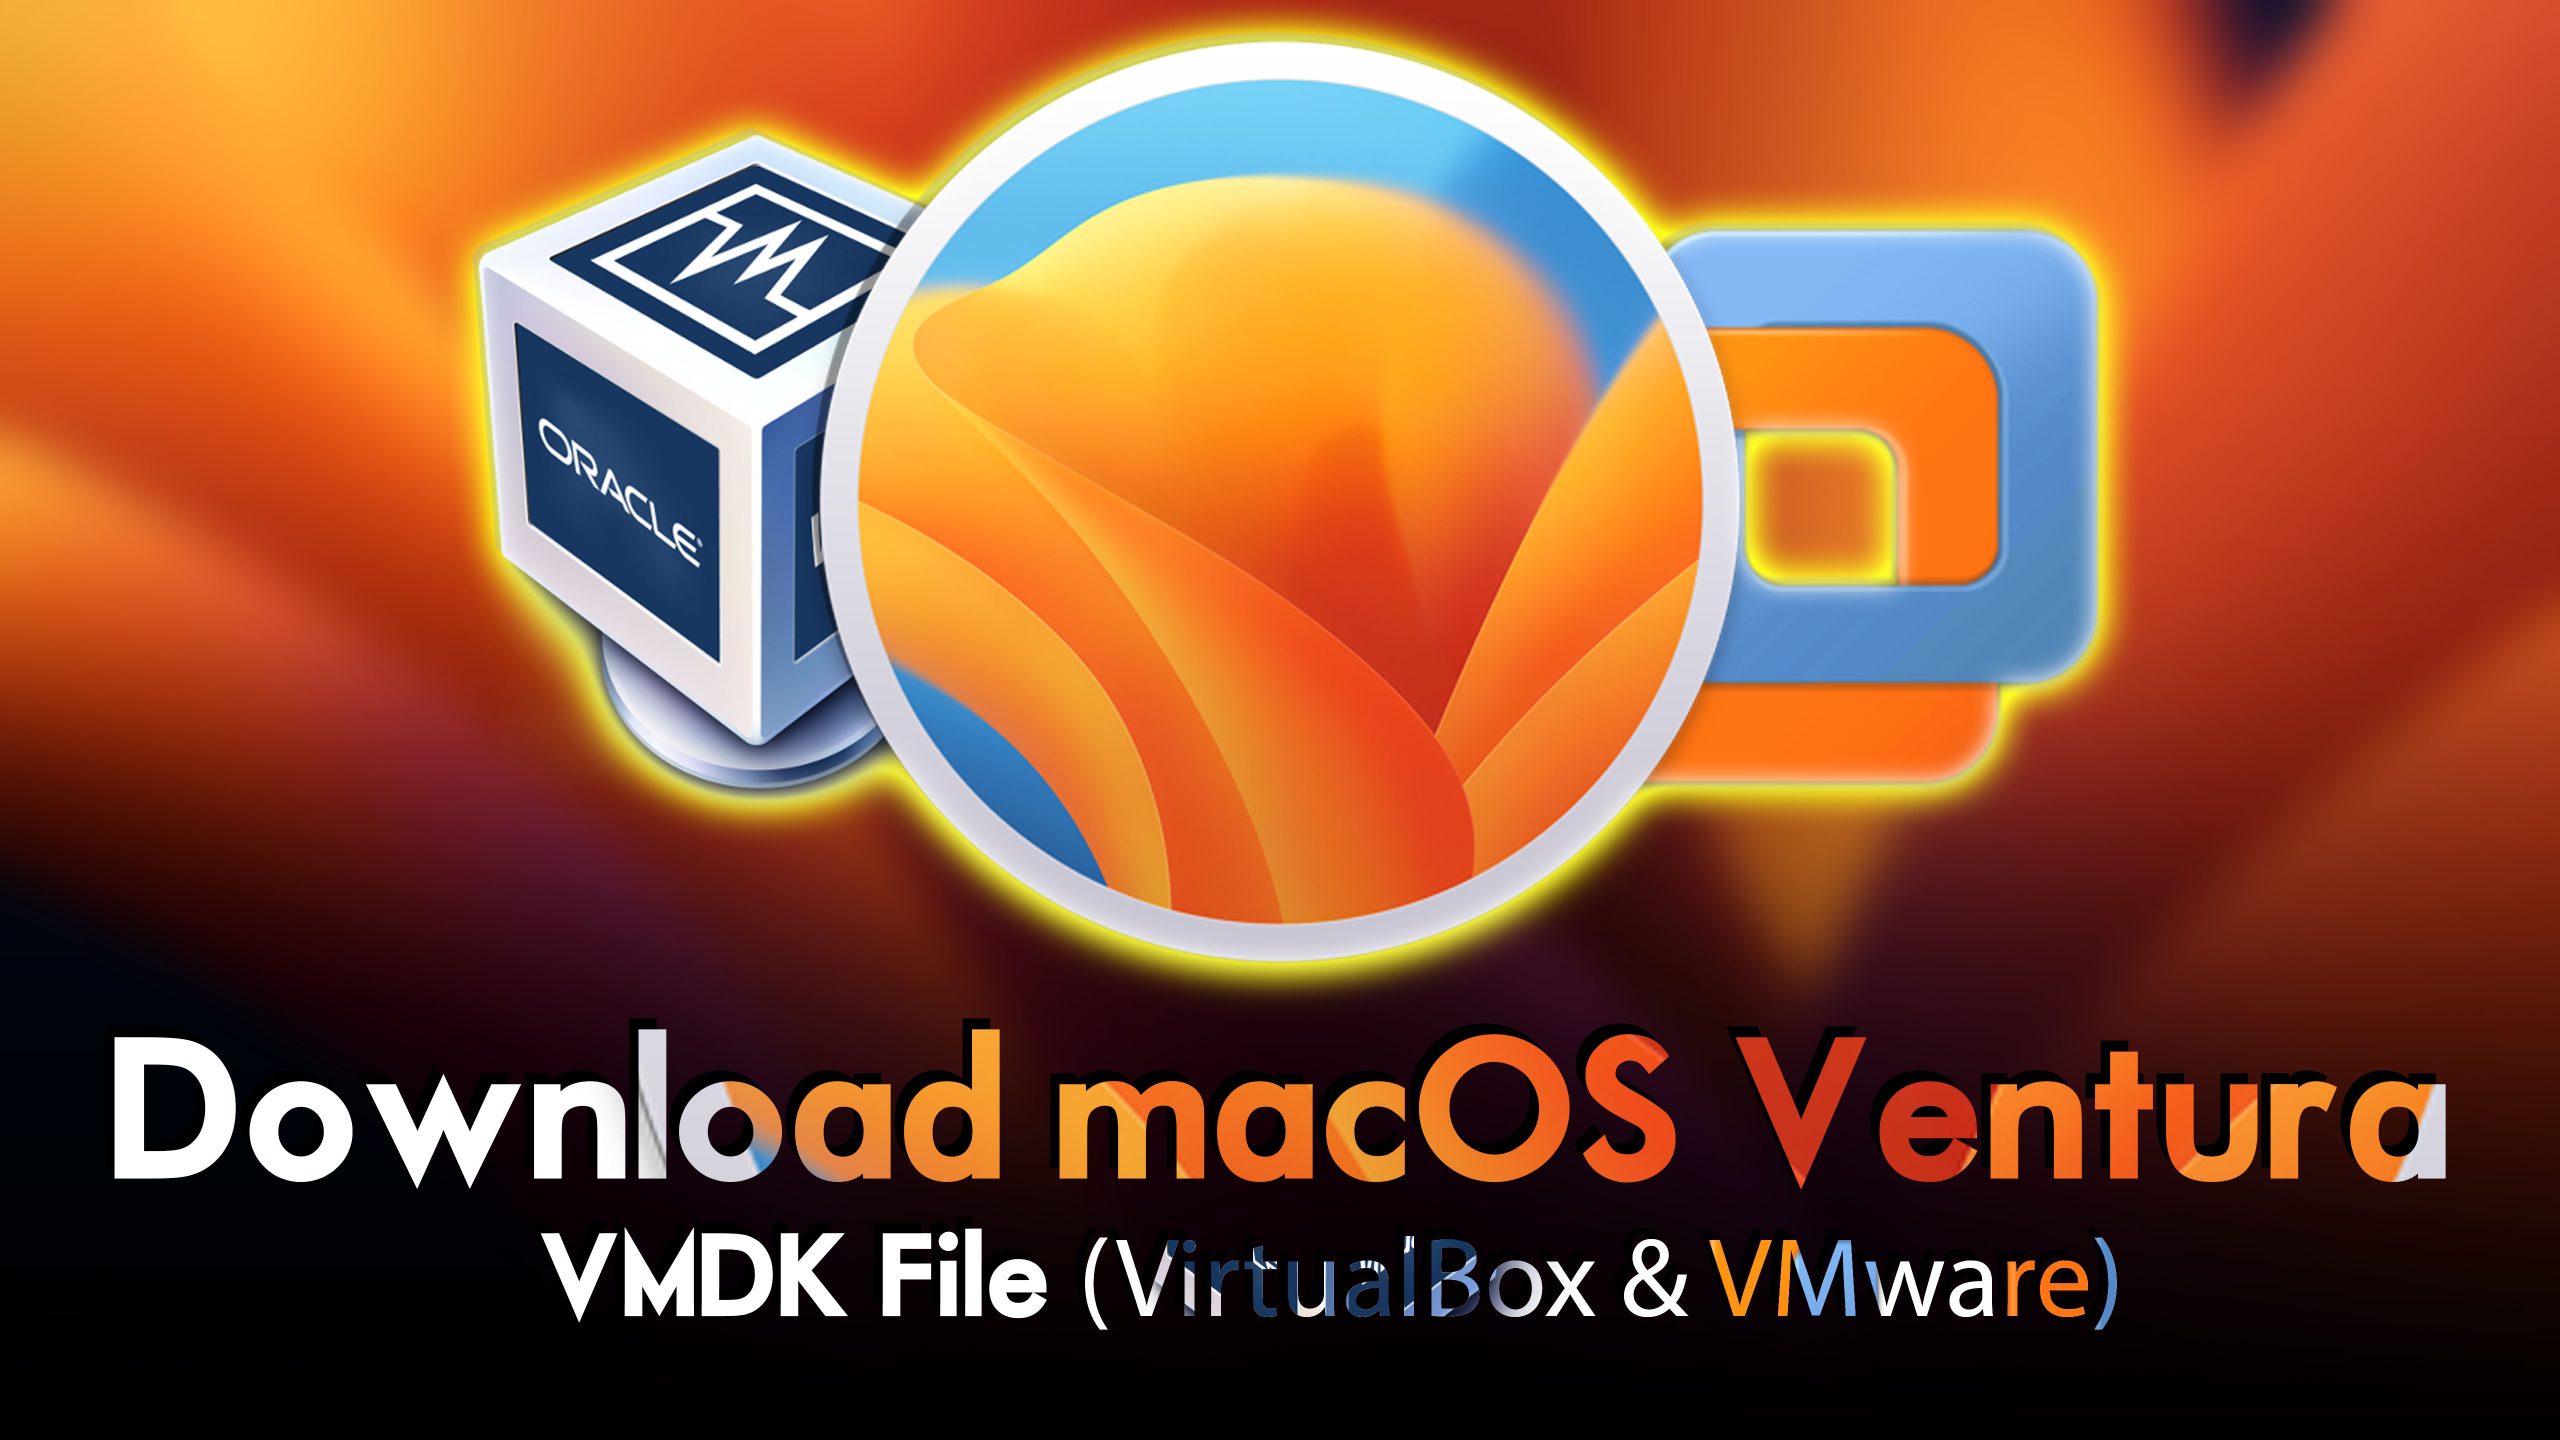 macos ventura vmware image download